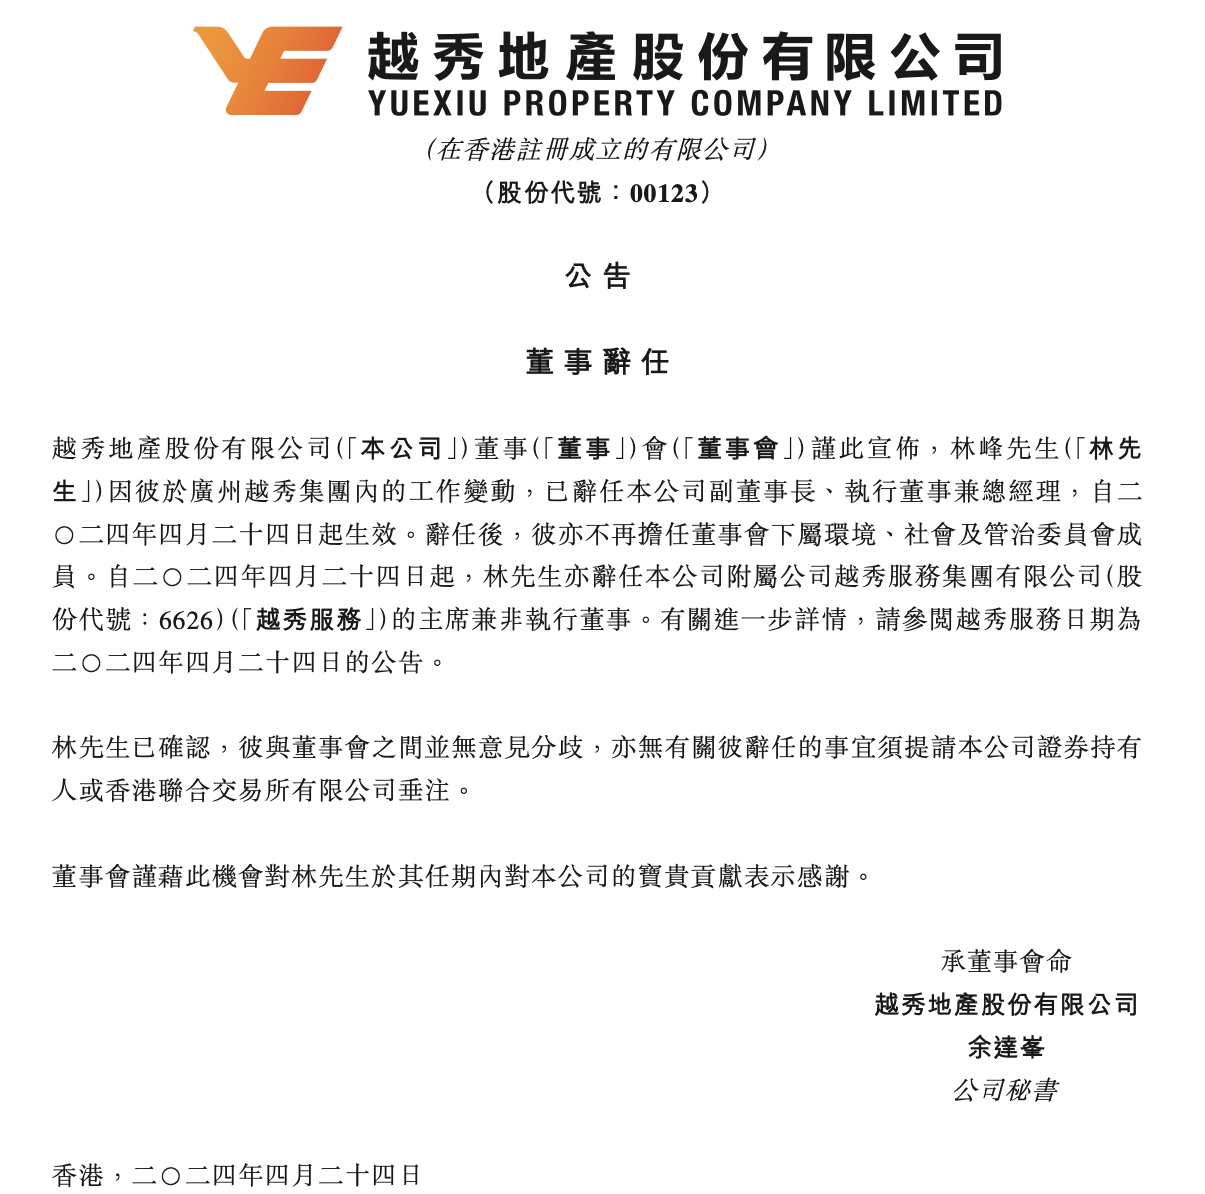 林峰辞任越秀地产副董事长、执行董事兼总经理